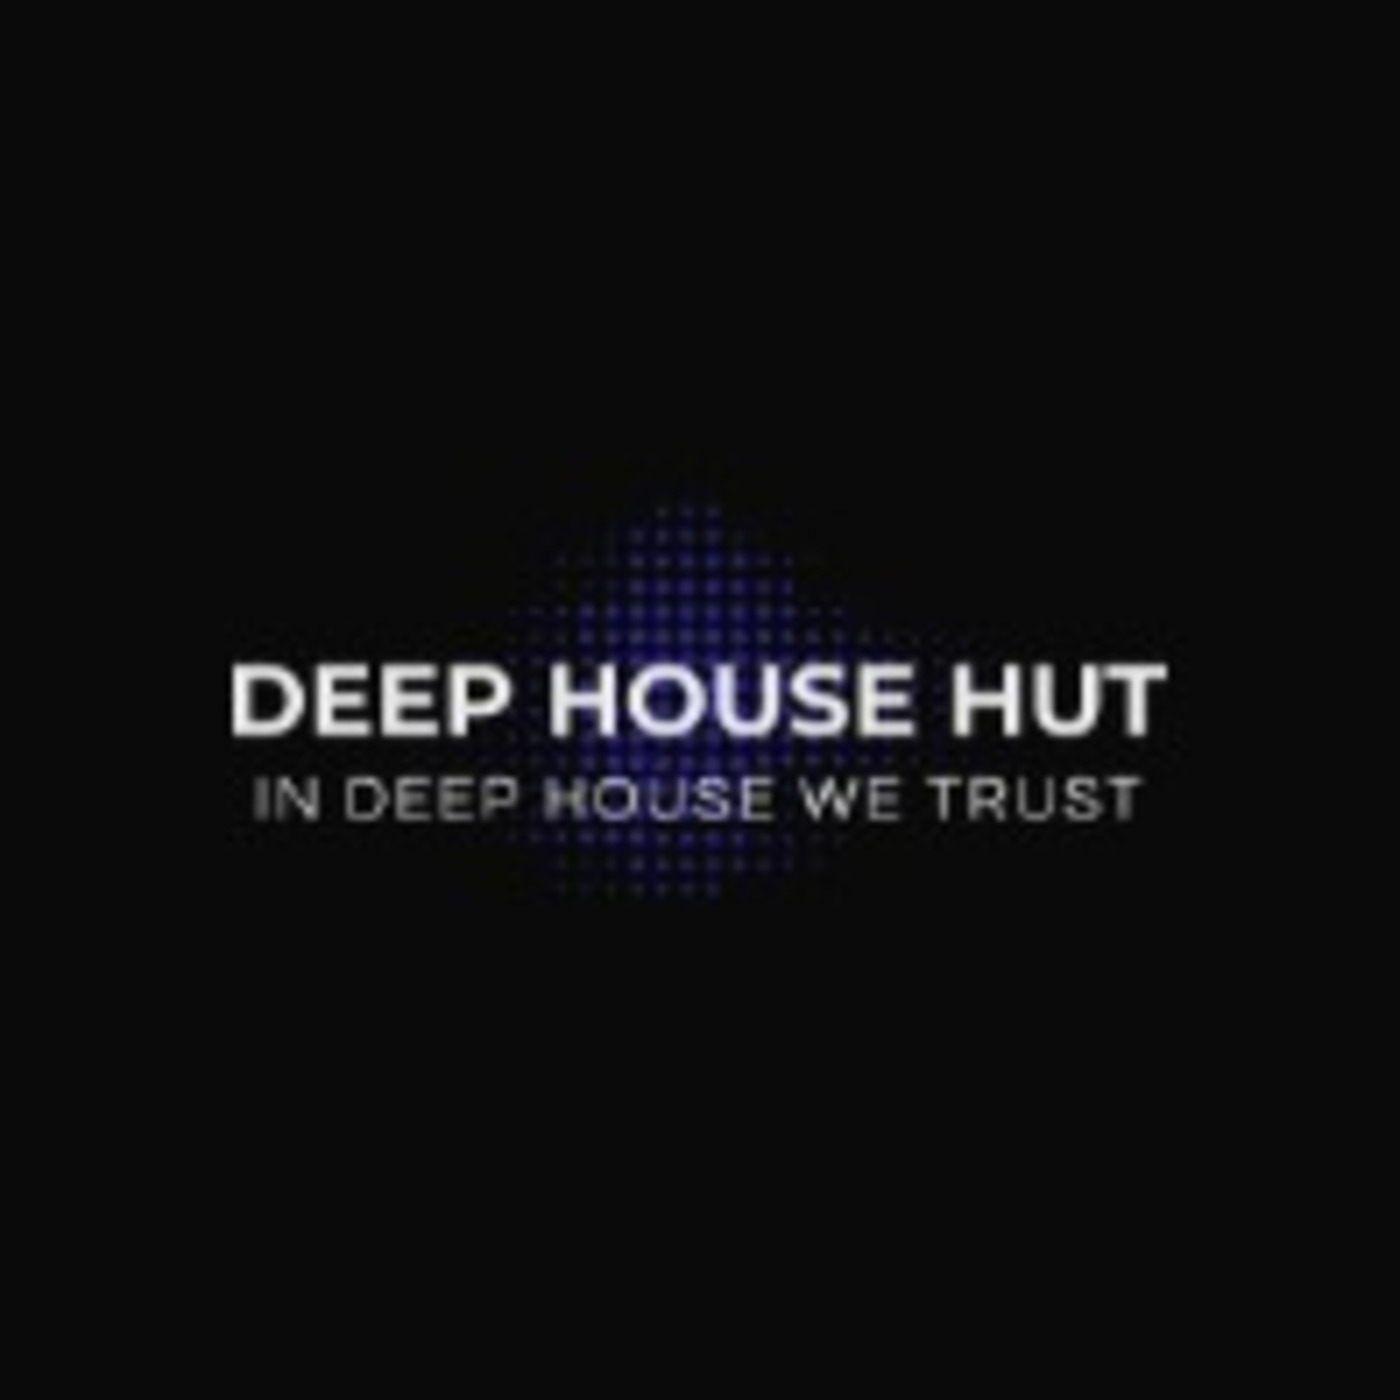 Deep House Hut 